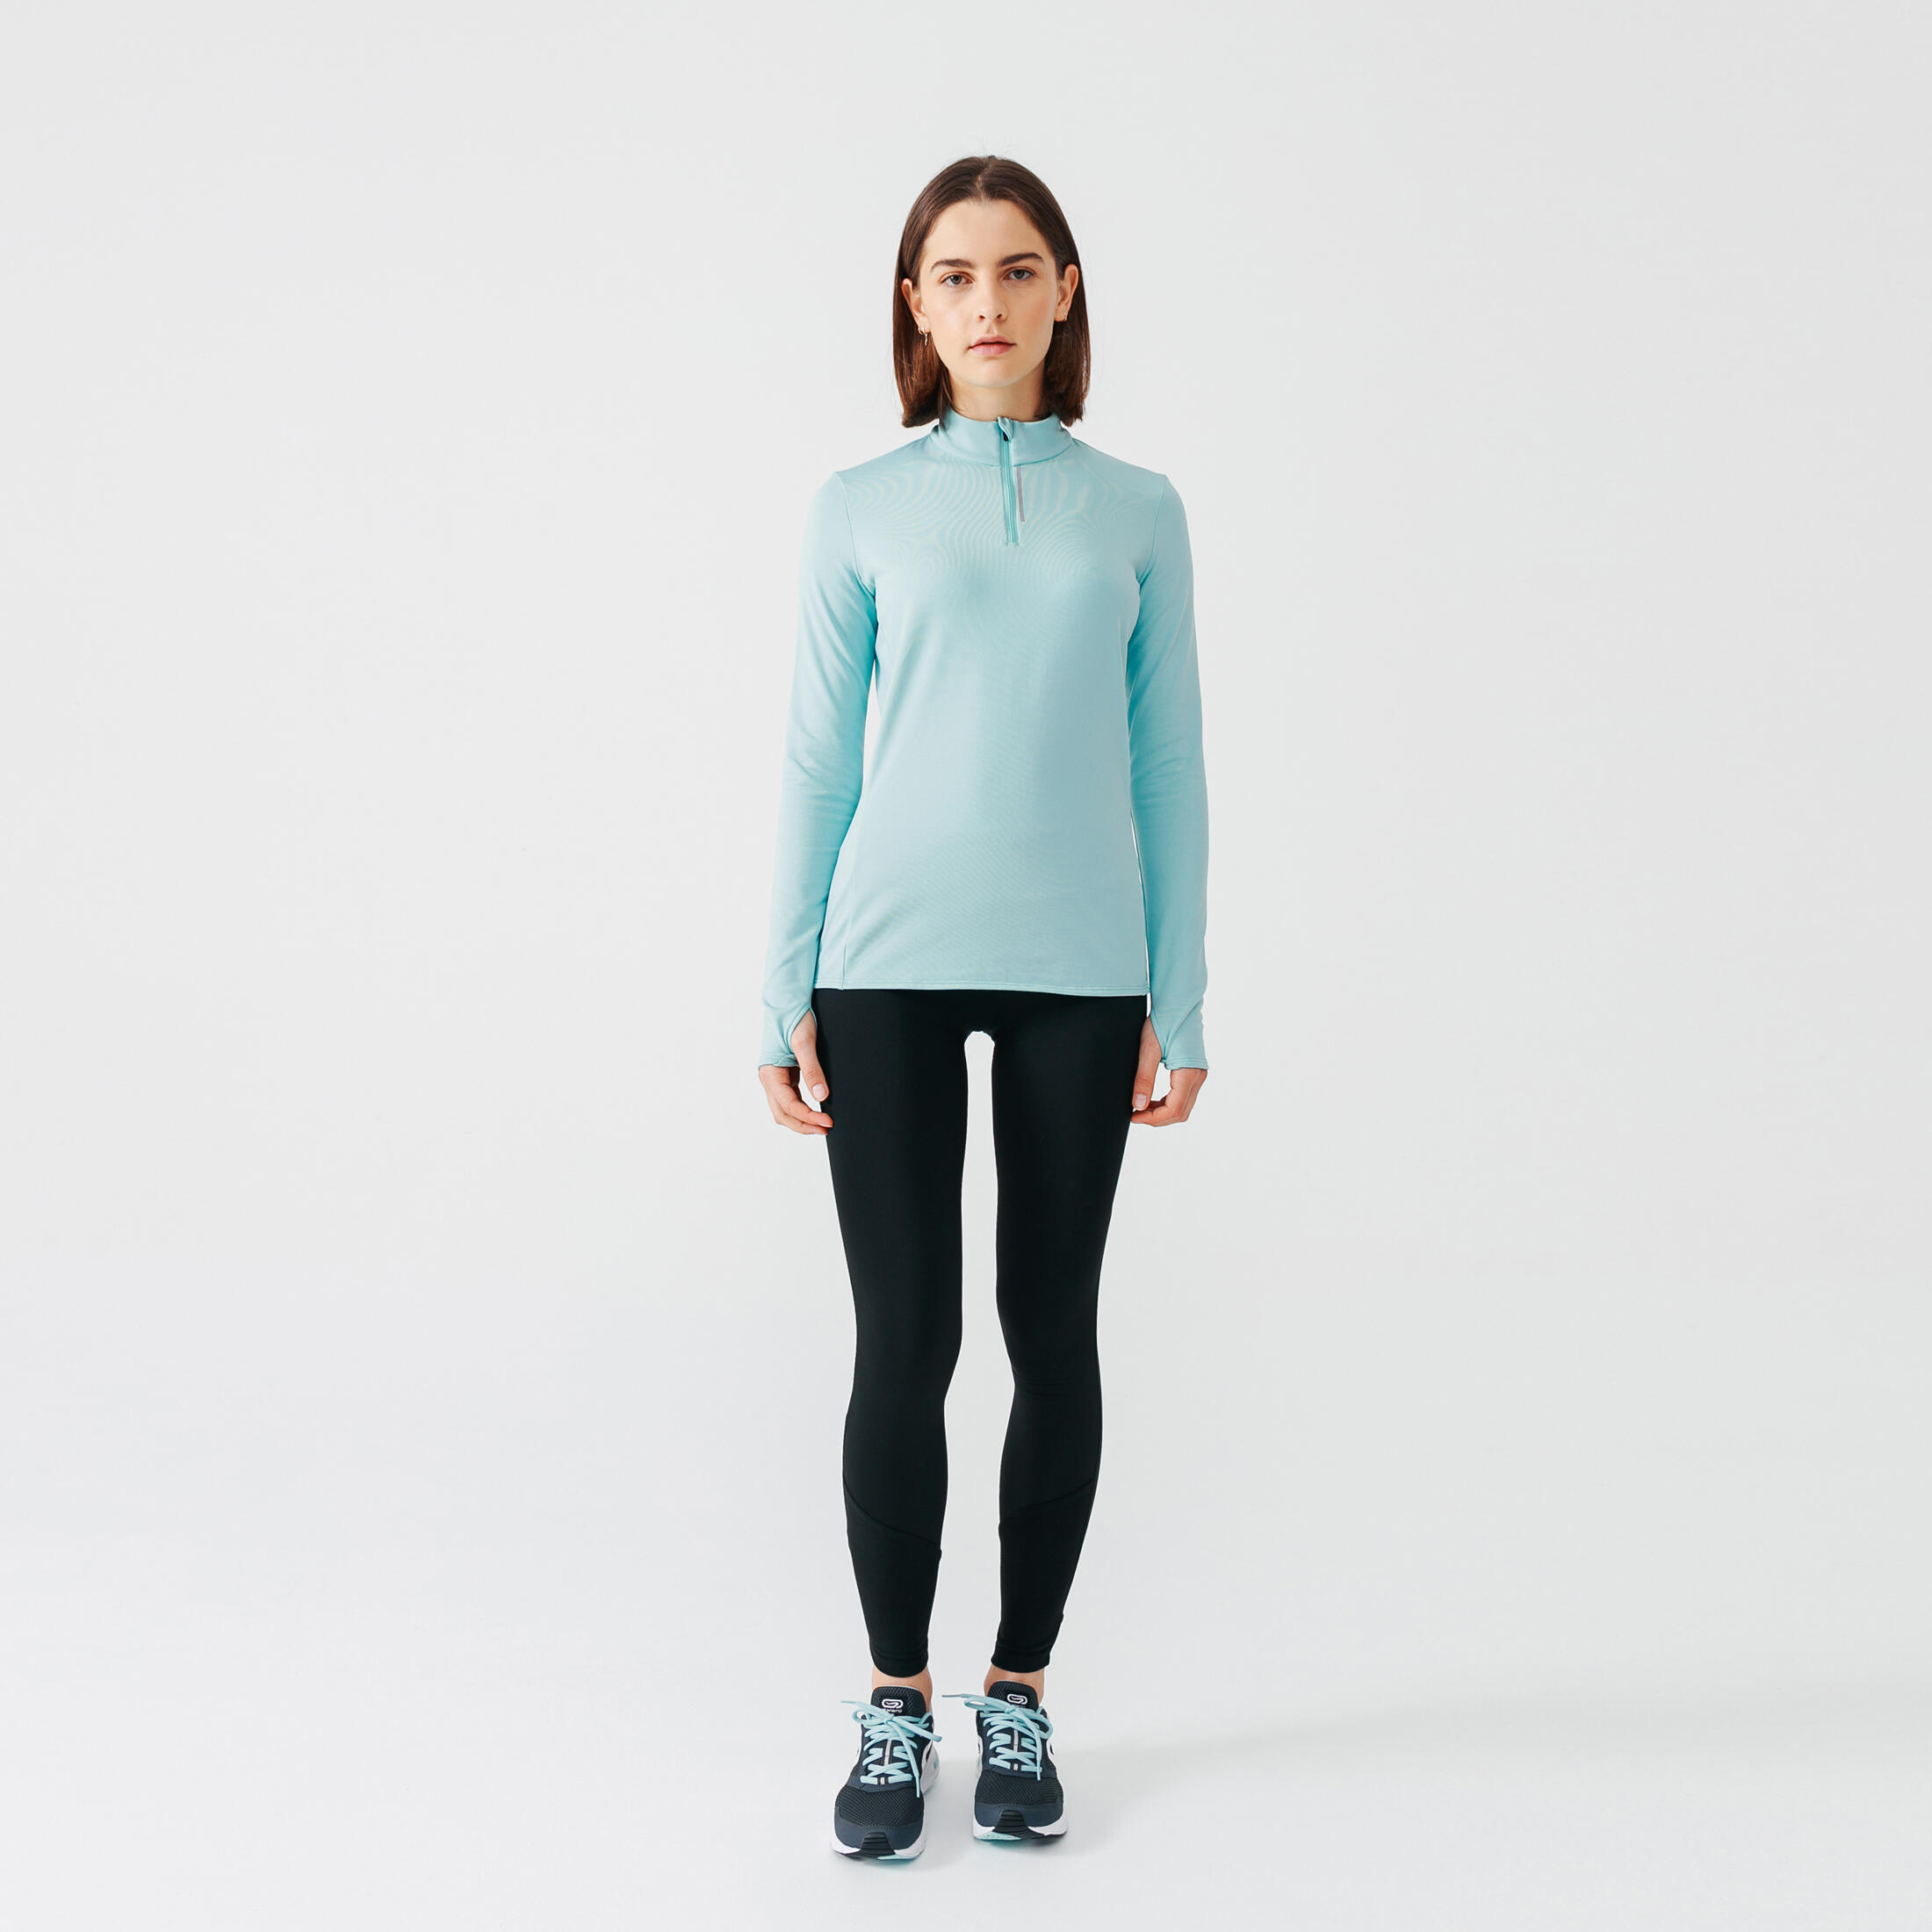 Zip Warm women's long-sleeved running T-shirt - black - Decathlon